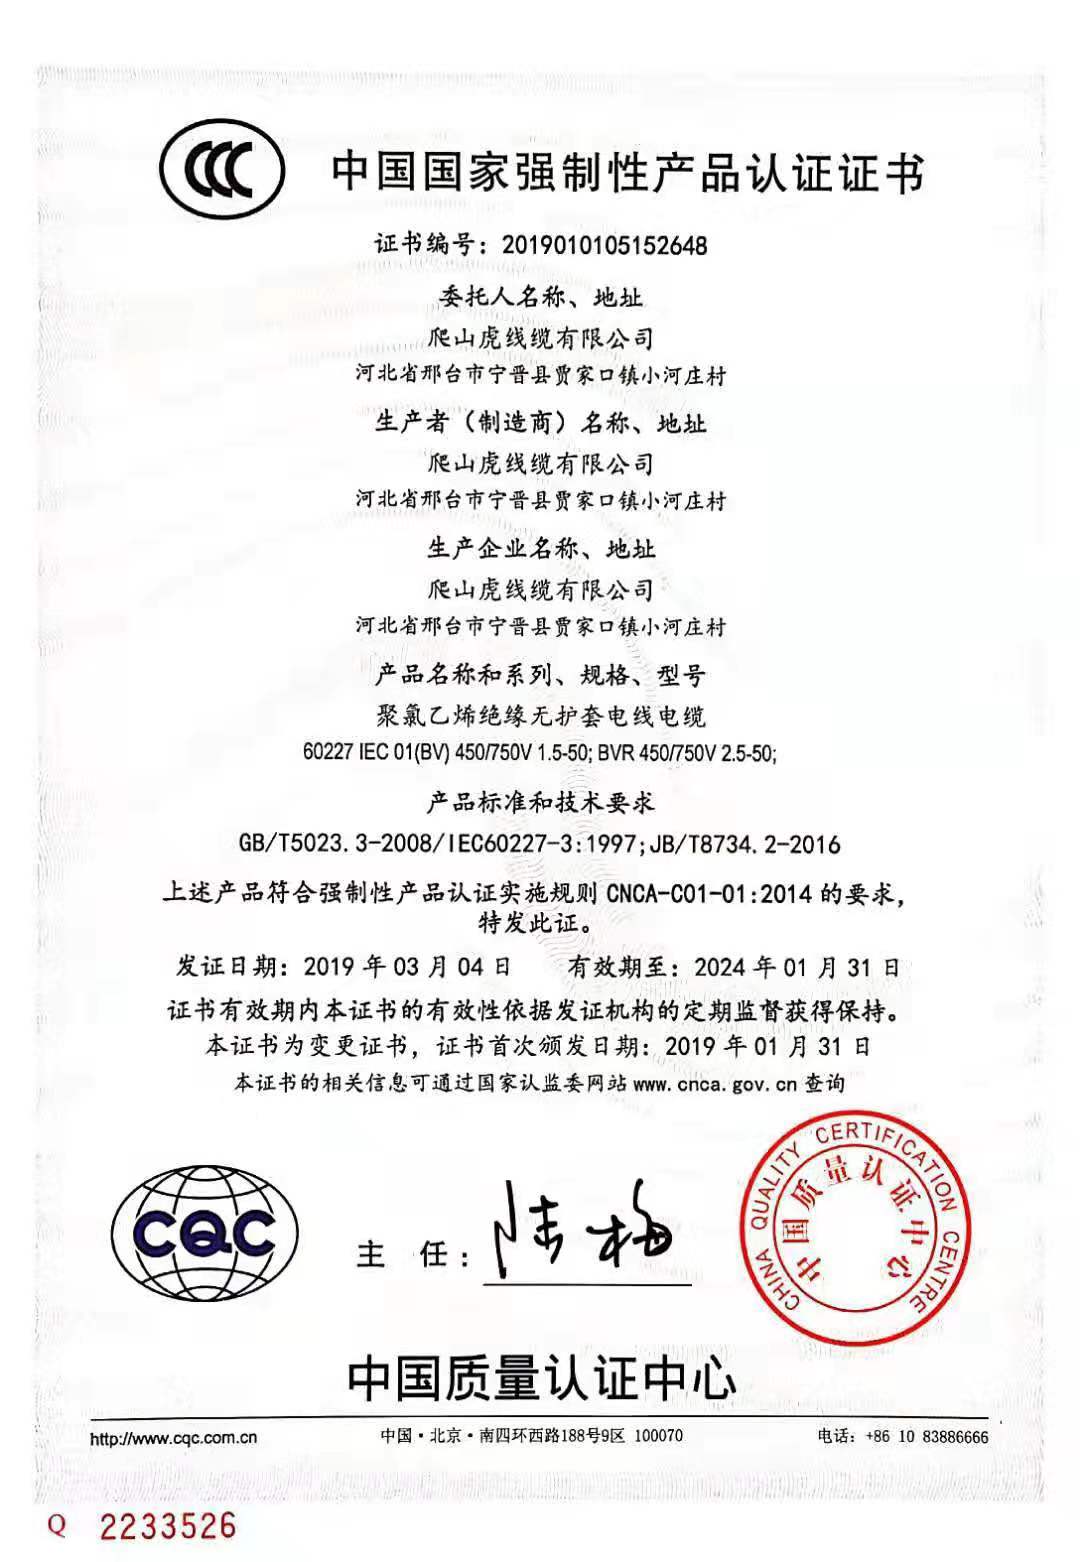 爬山虎线缆公司产品3C质量体系认证书